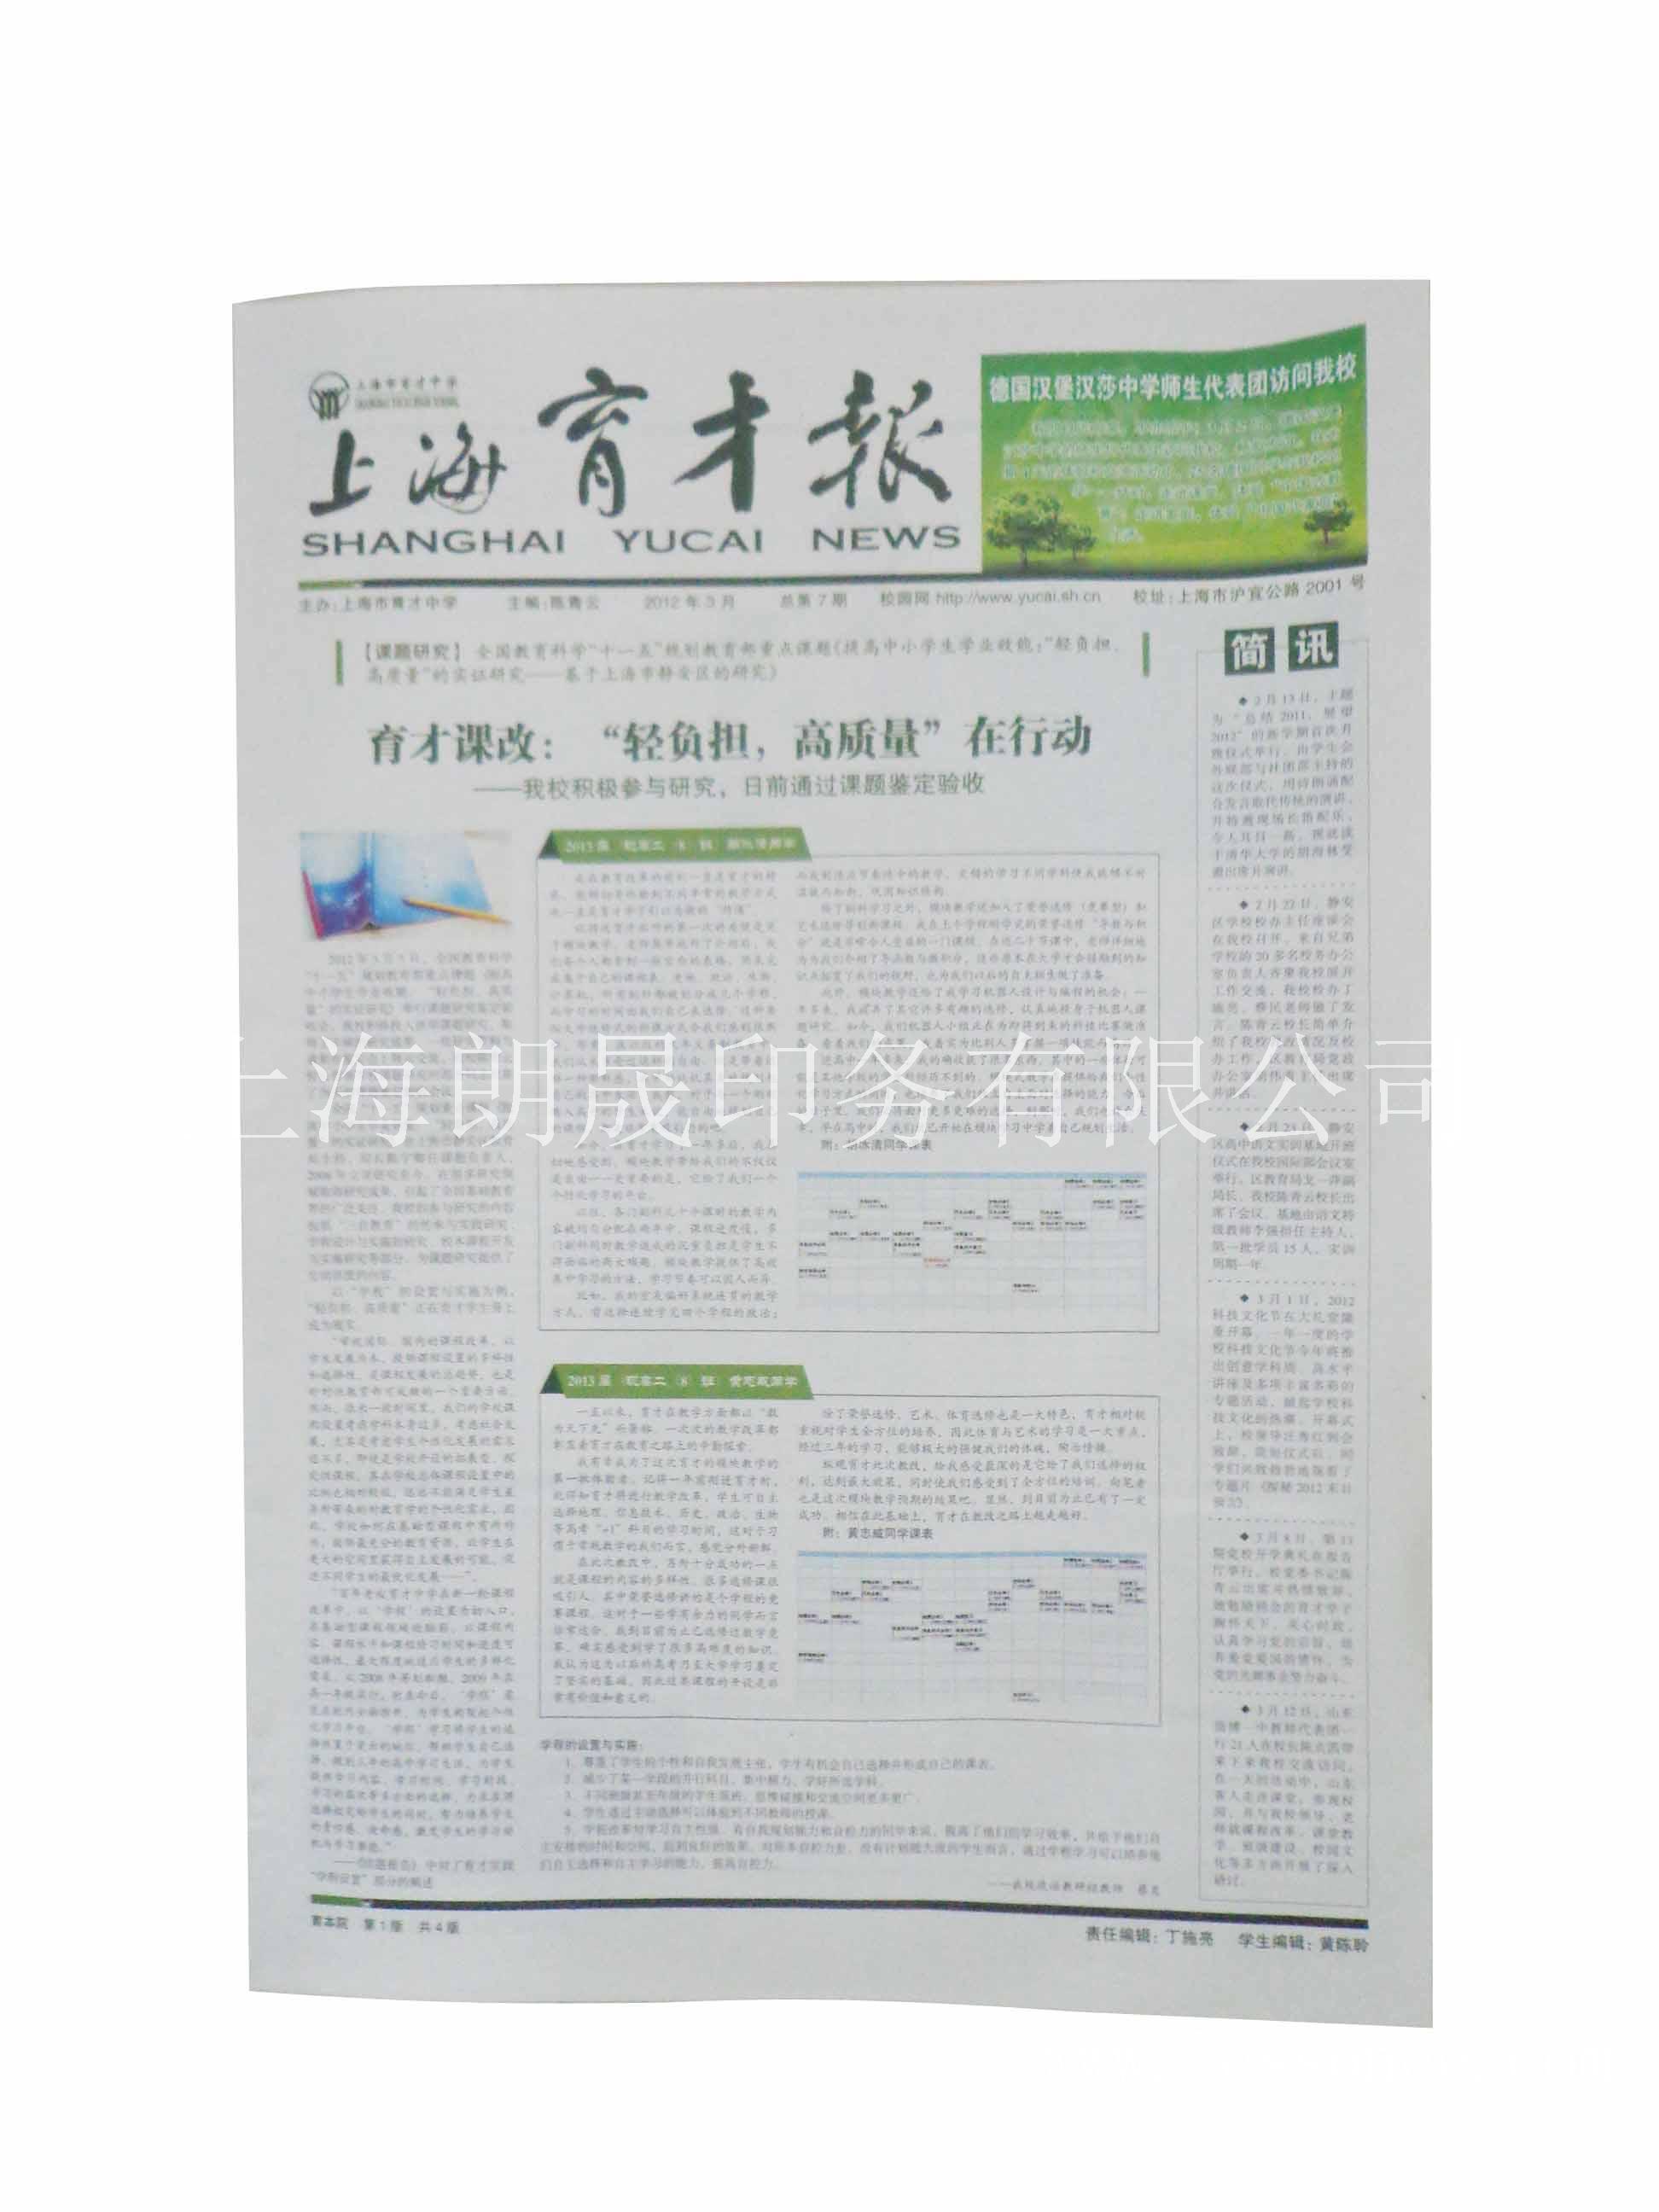 上海报纸设计--印刷-